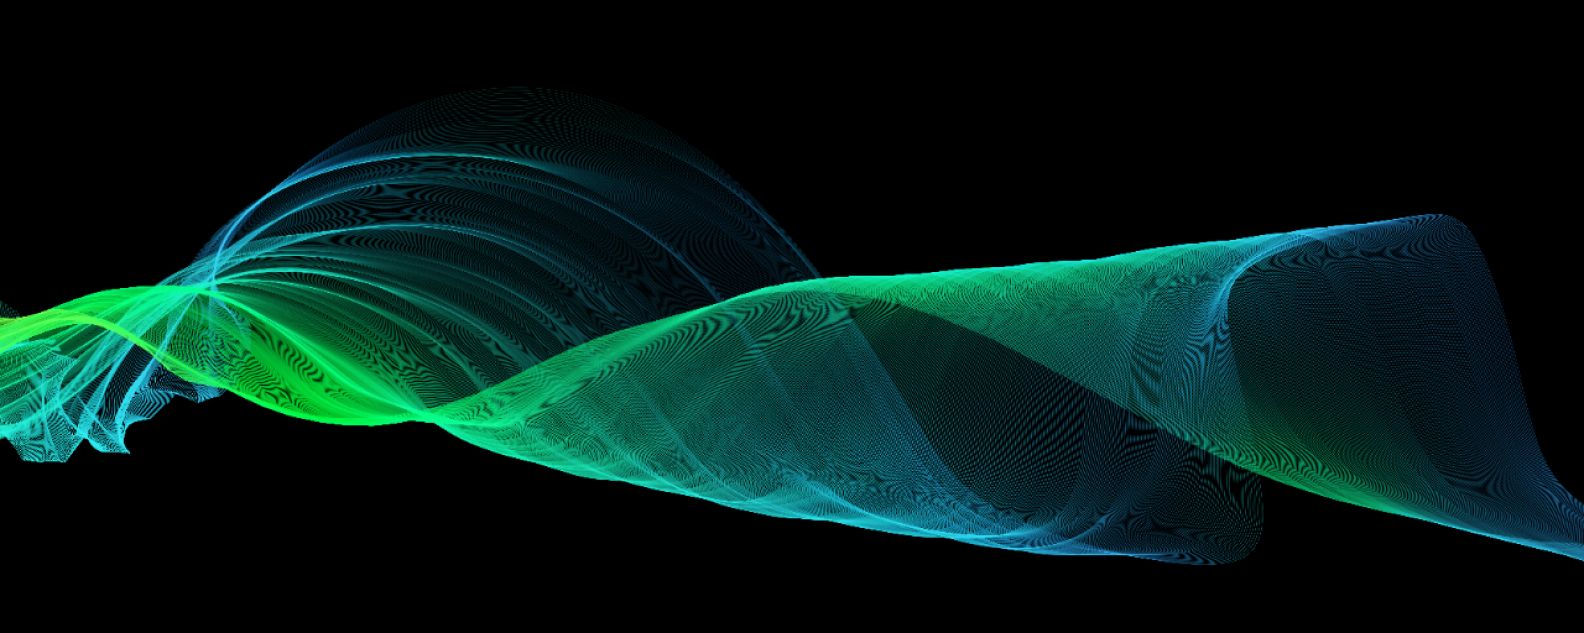 Darstellung eines abstrakten Wellenelements aus grünen Linien auf schwarzem Hintergrund